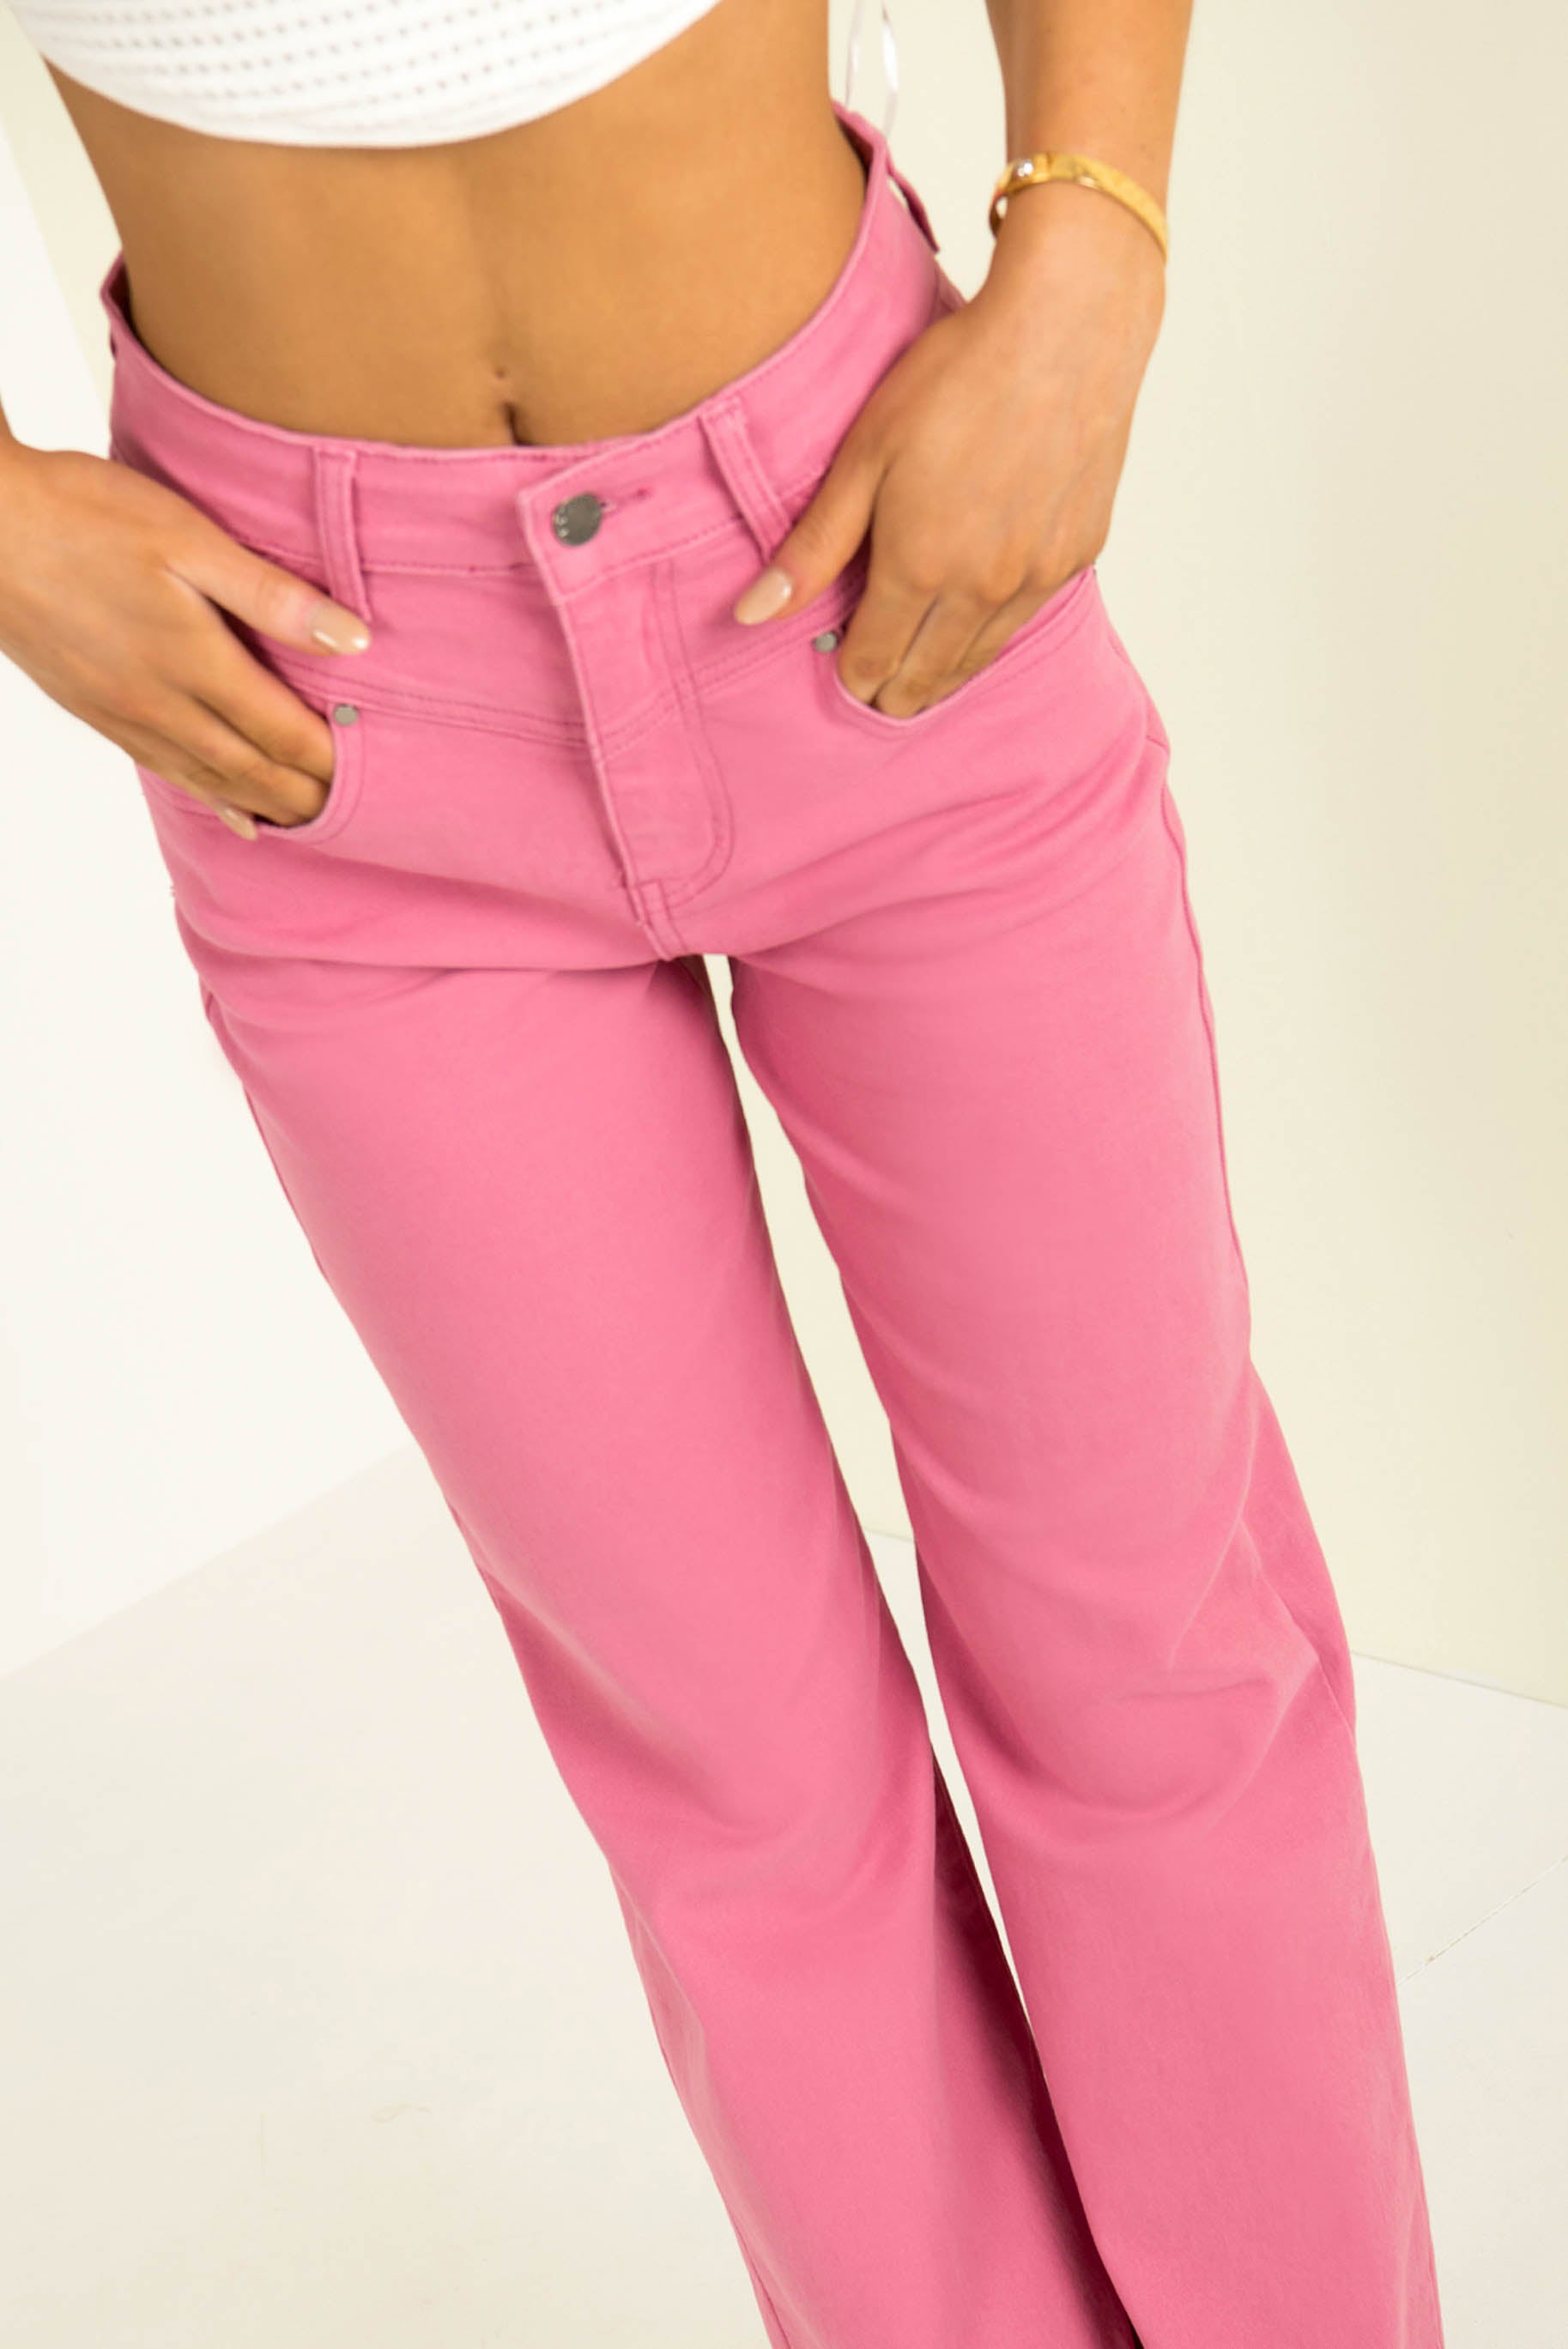 Emmett Jeans / Hot Pink